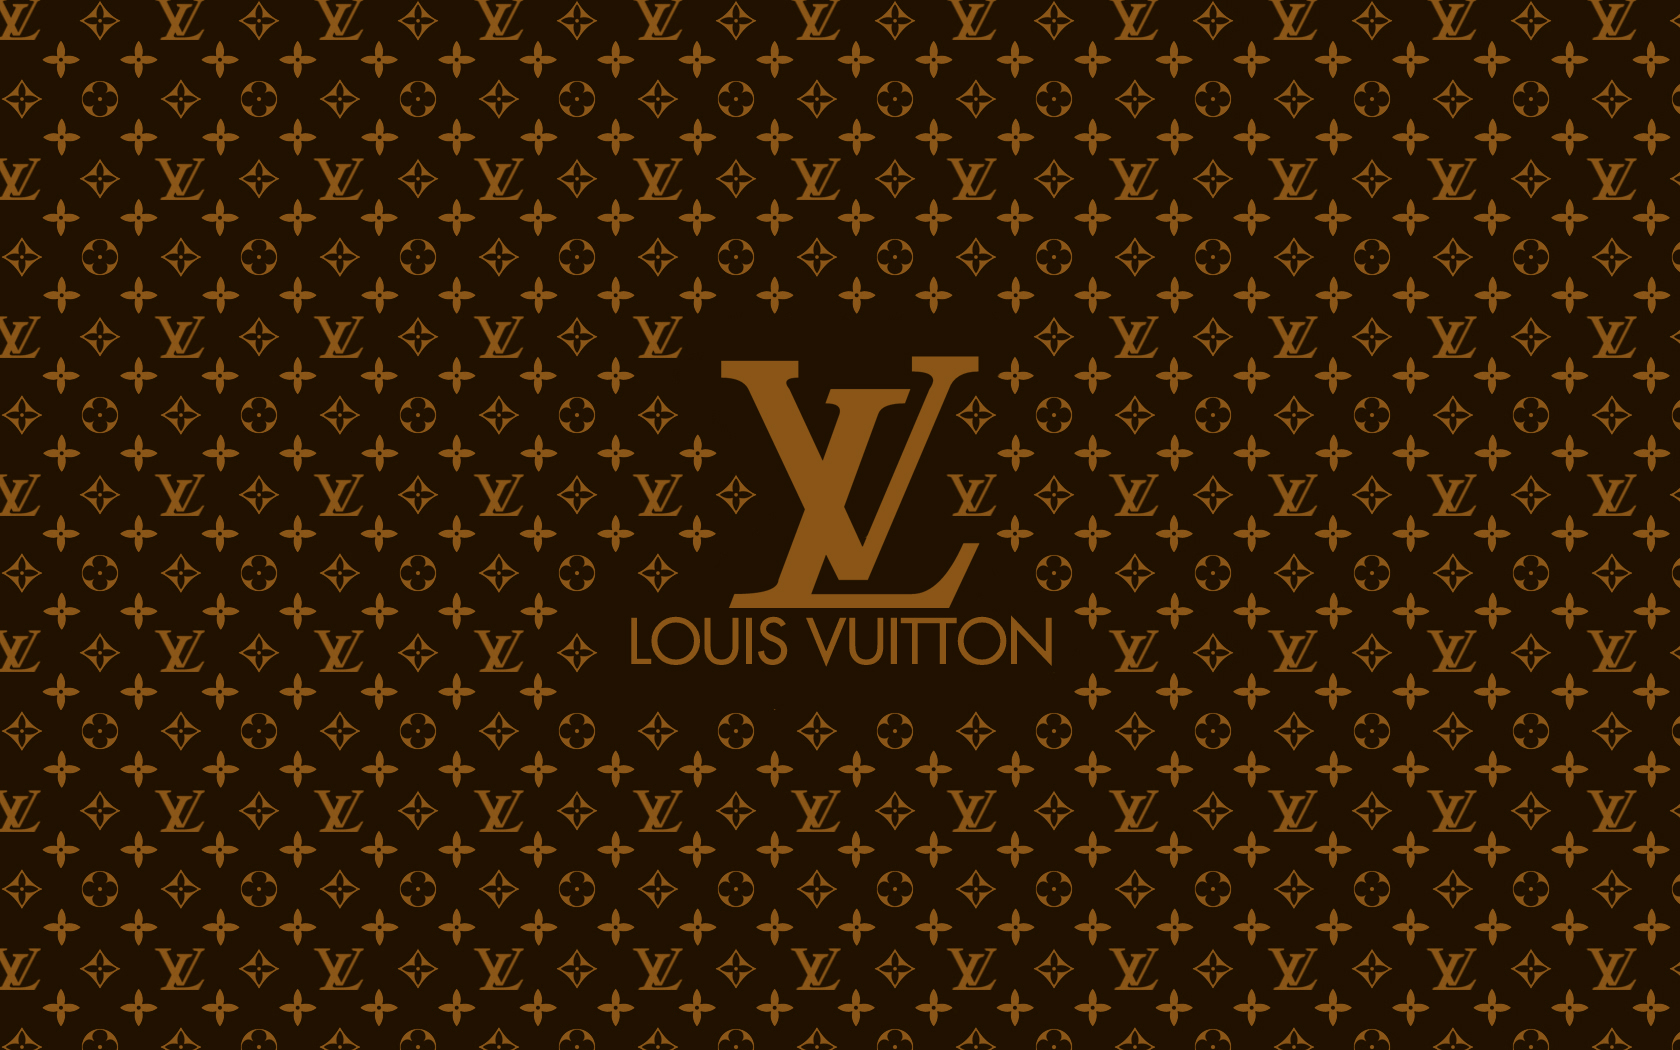 Legit check for a Louis Vuitton tie : r/VintageClothing